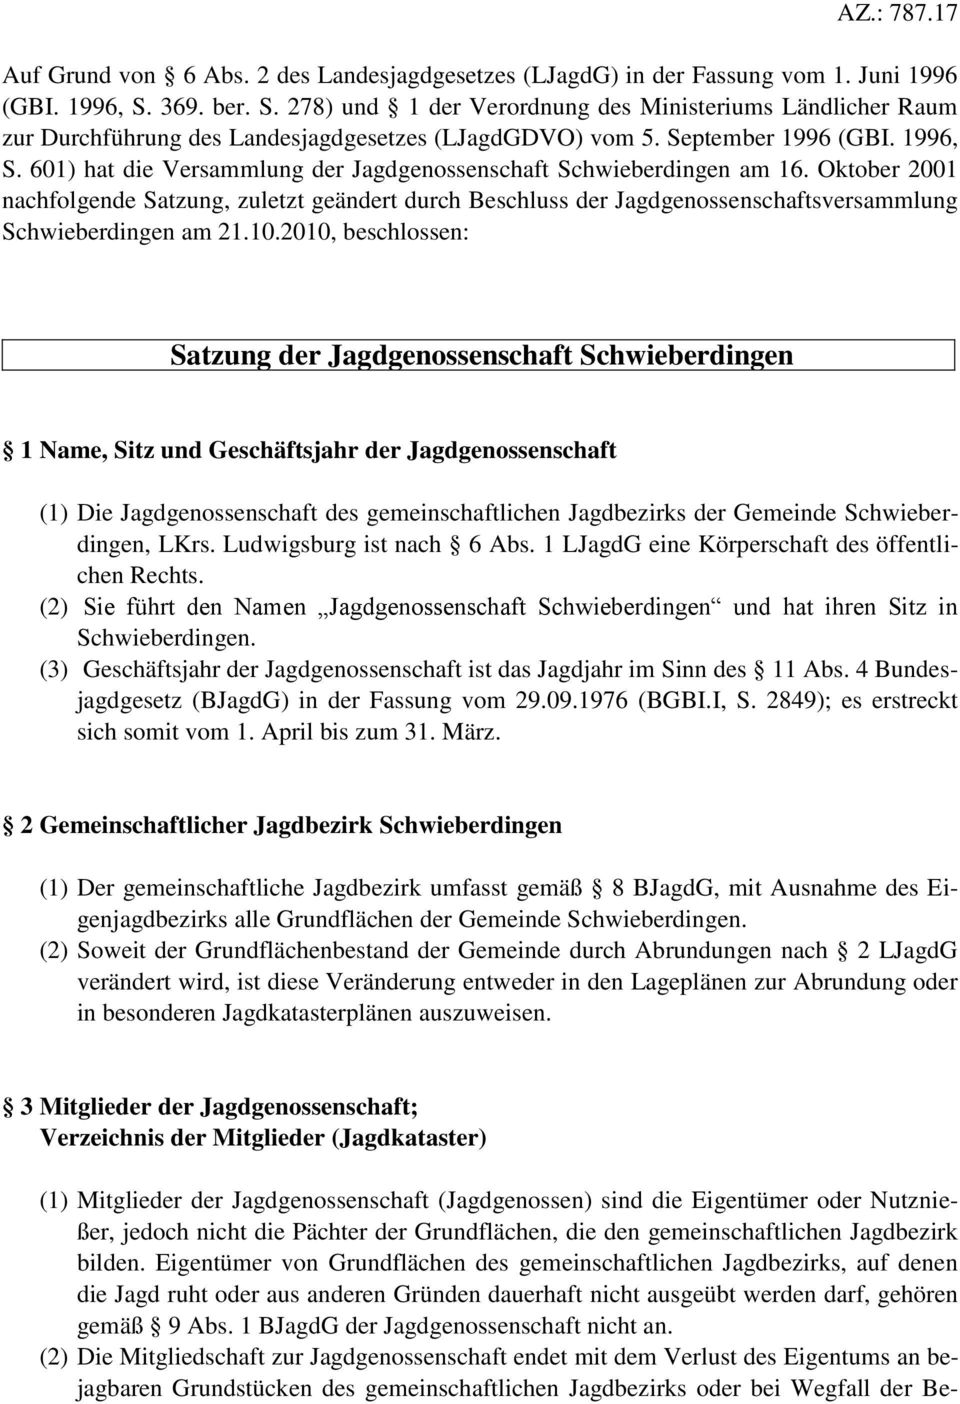 601) hat die Versammlung der Jagdgenossenschaft Schwieberdingen am 16. Oktober 2001 nachfolgende Satzung, zuletzt geändert durch Beschluss der Jagdgenossenschaftsversammlung Schwieberdingen am 21.10.